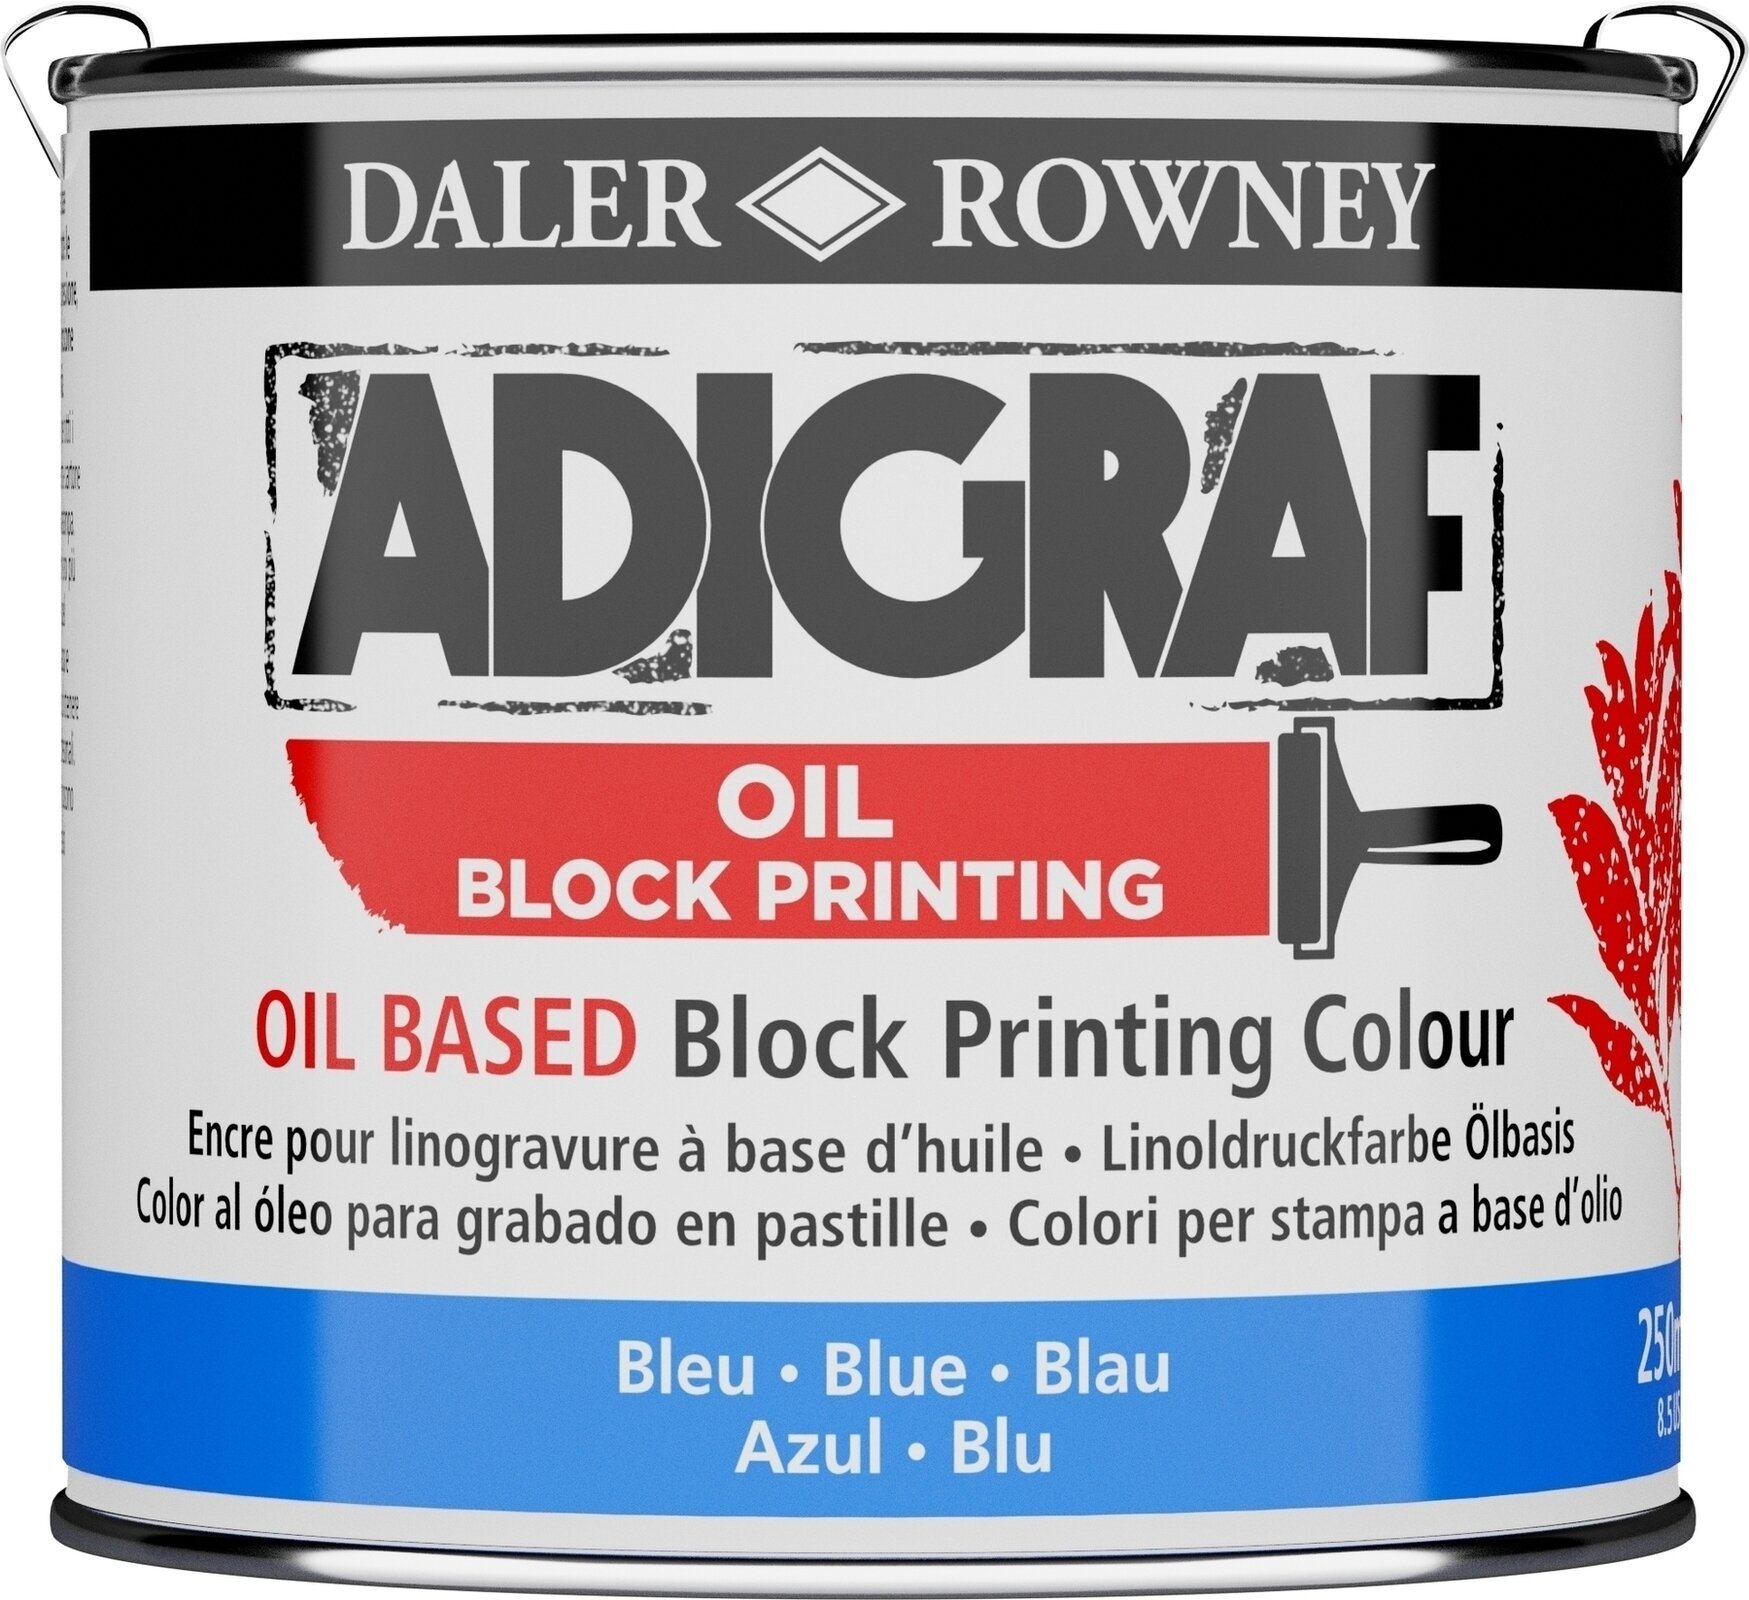 Linoväri Daler Rowney Adigraf Block Printing Oil Linoväri Blue 250 ml